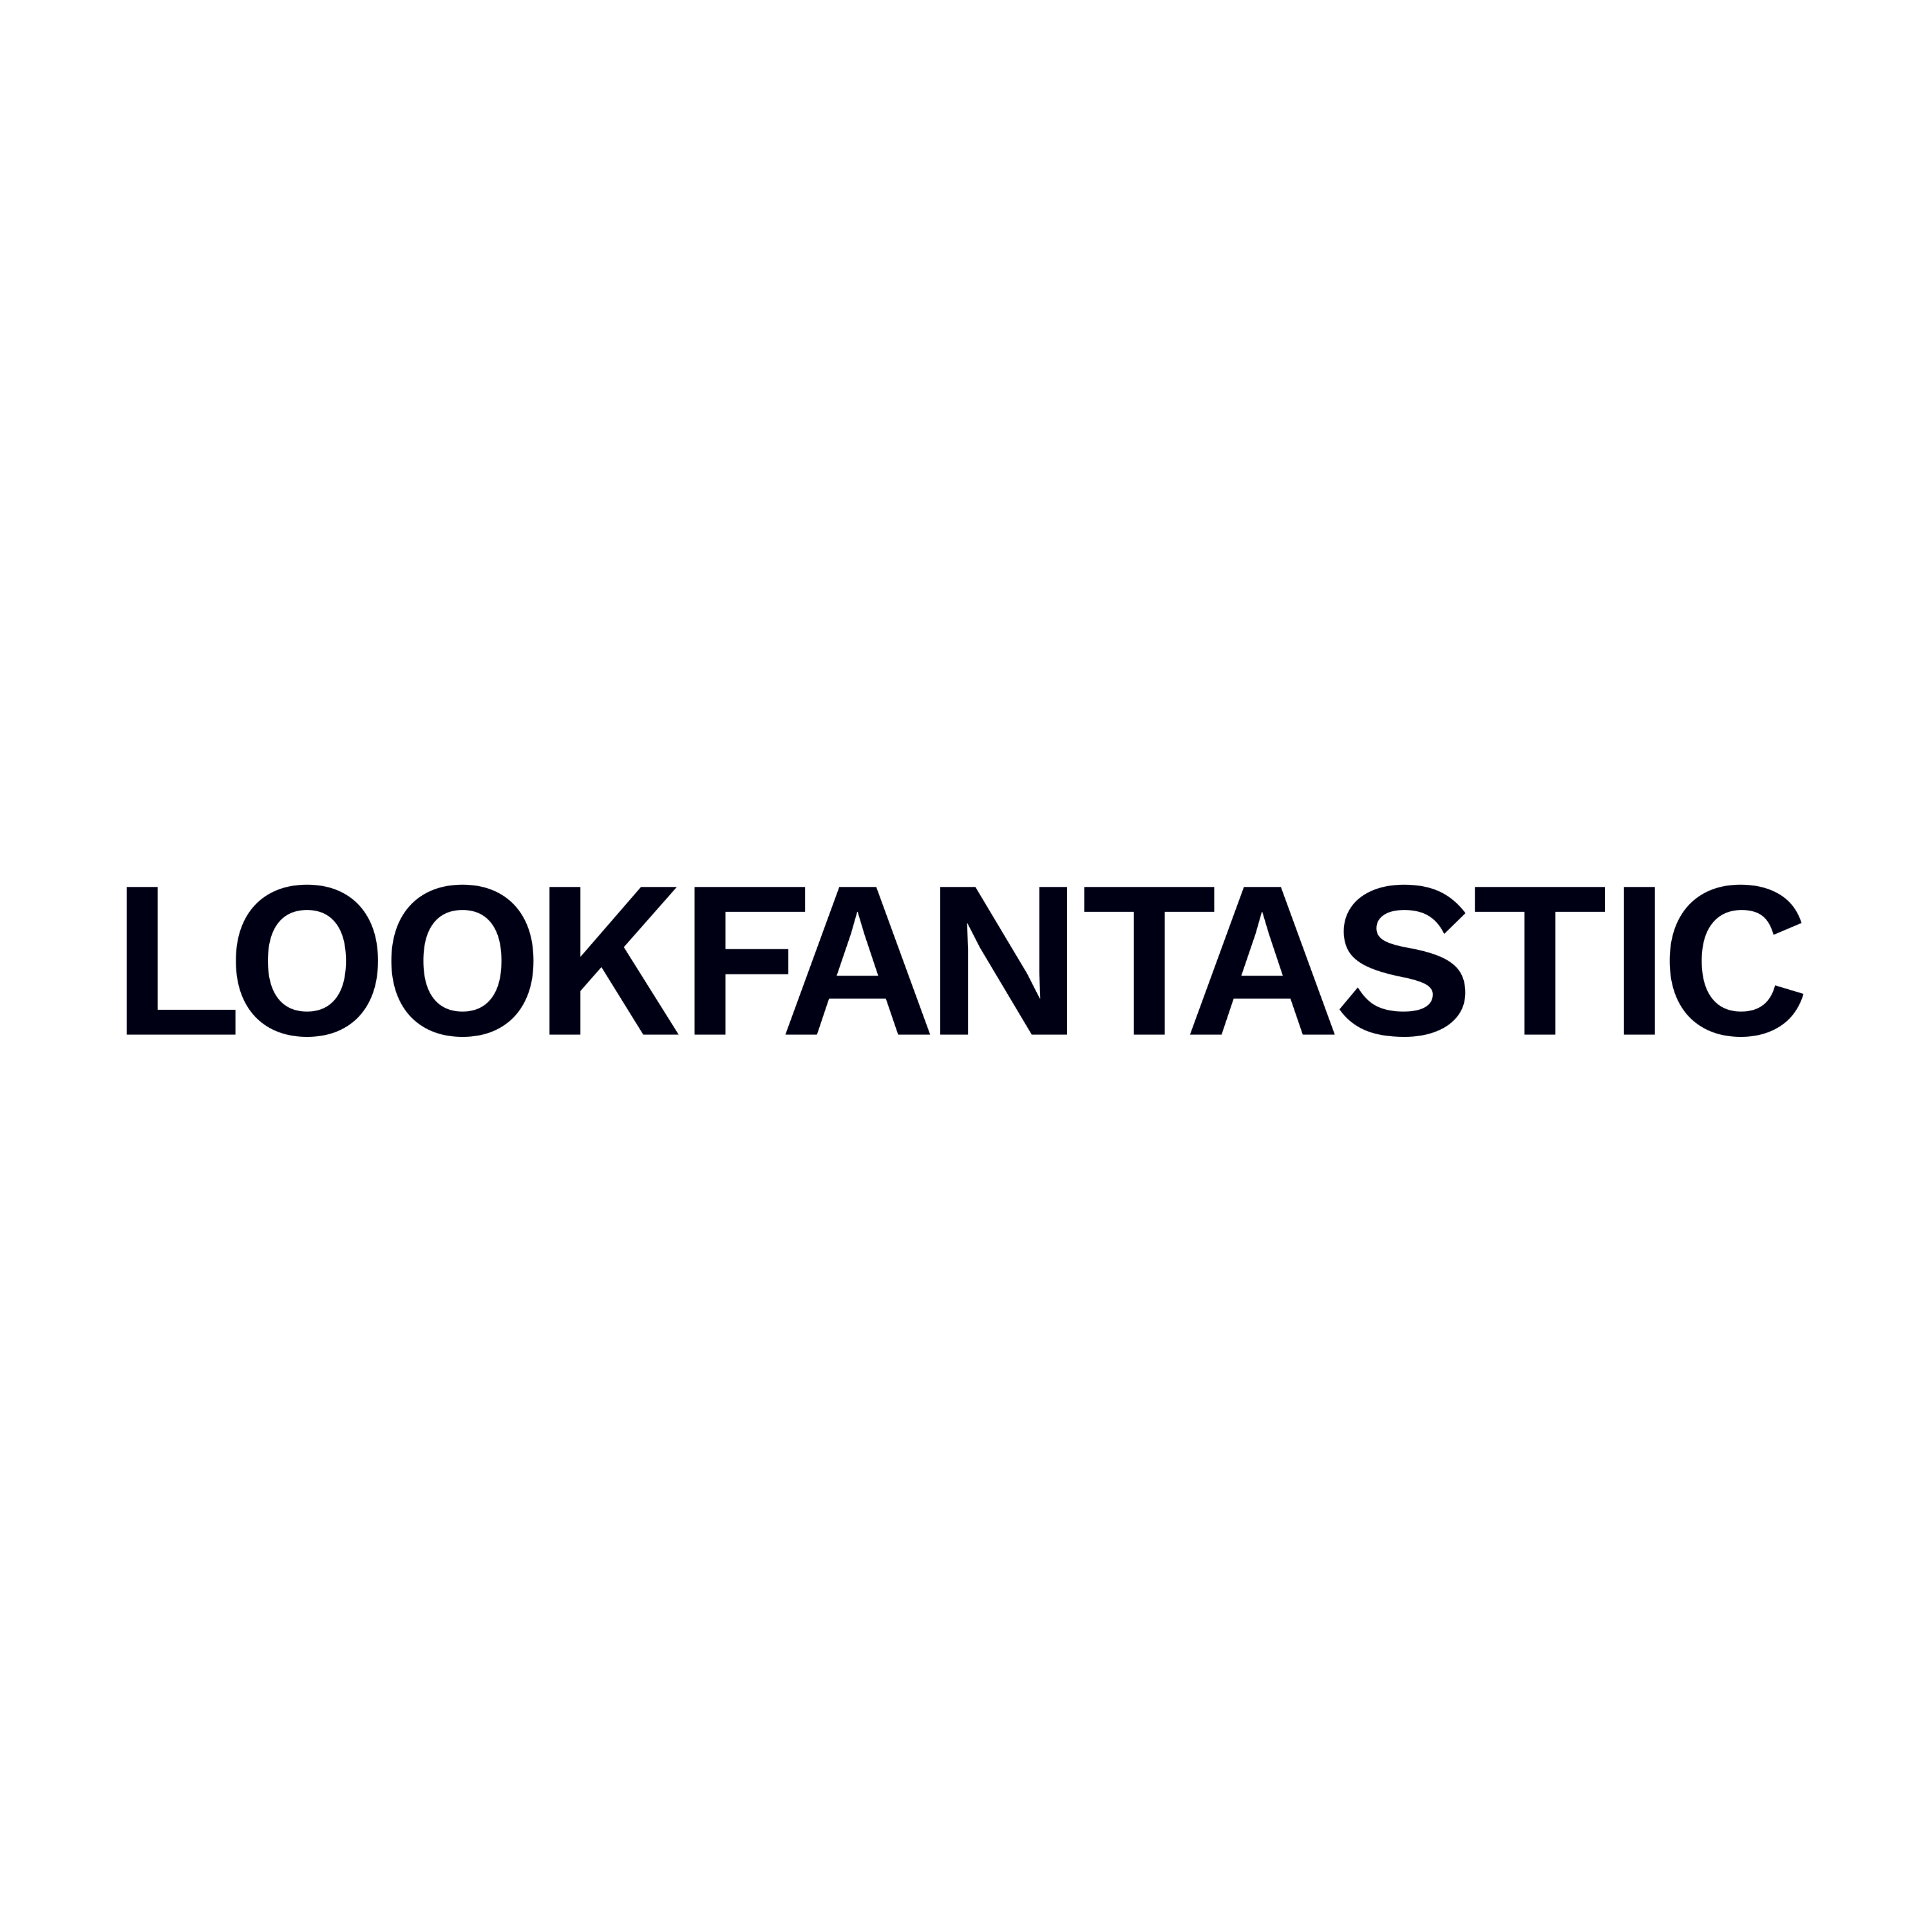 Lookfantastic Coupons & Promo Codes